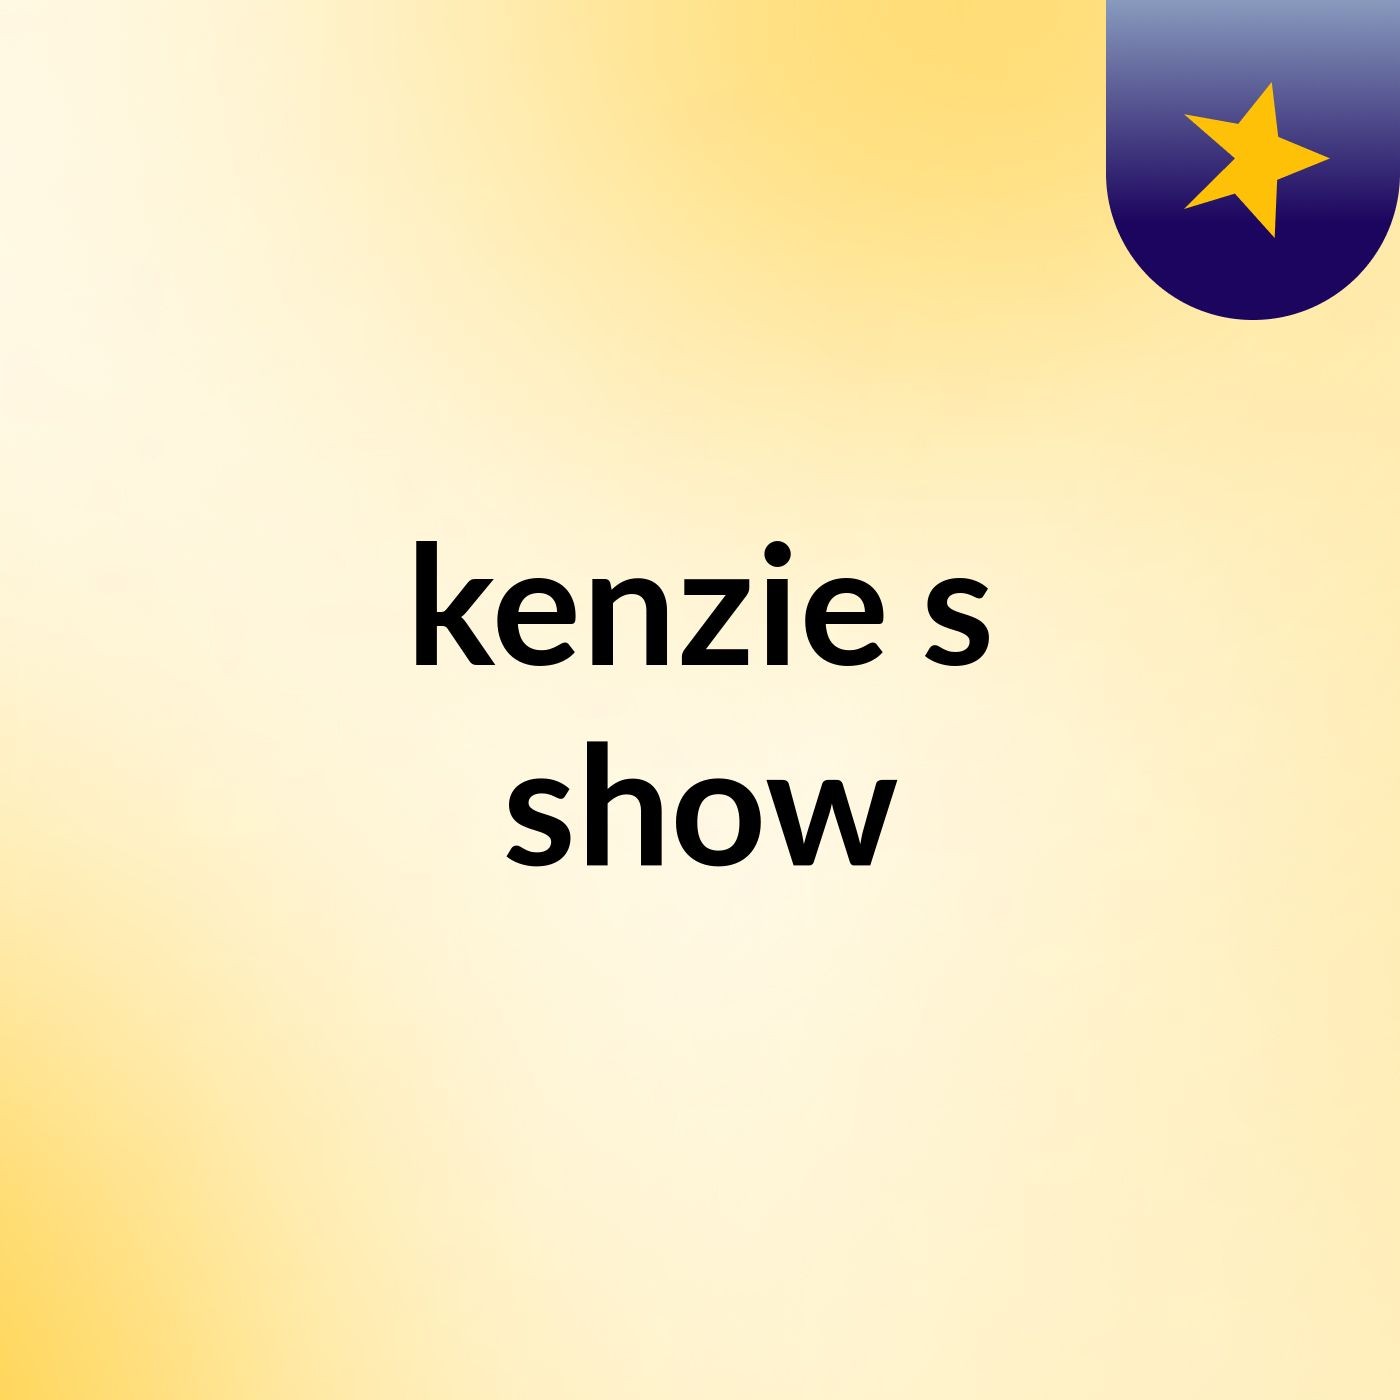 kenzie's show